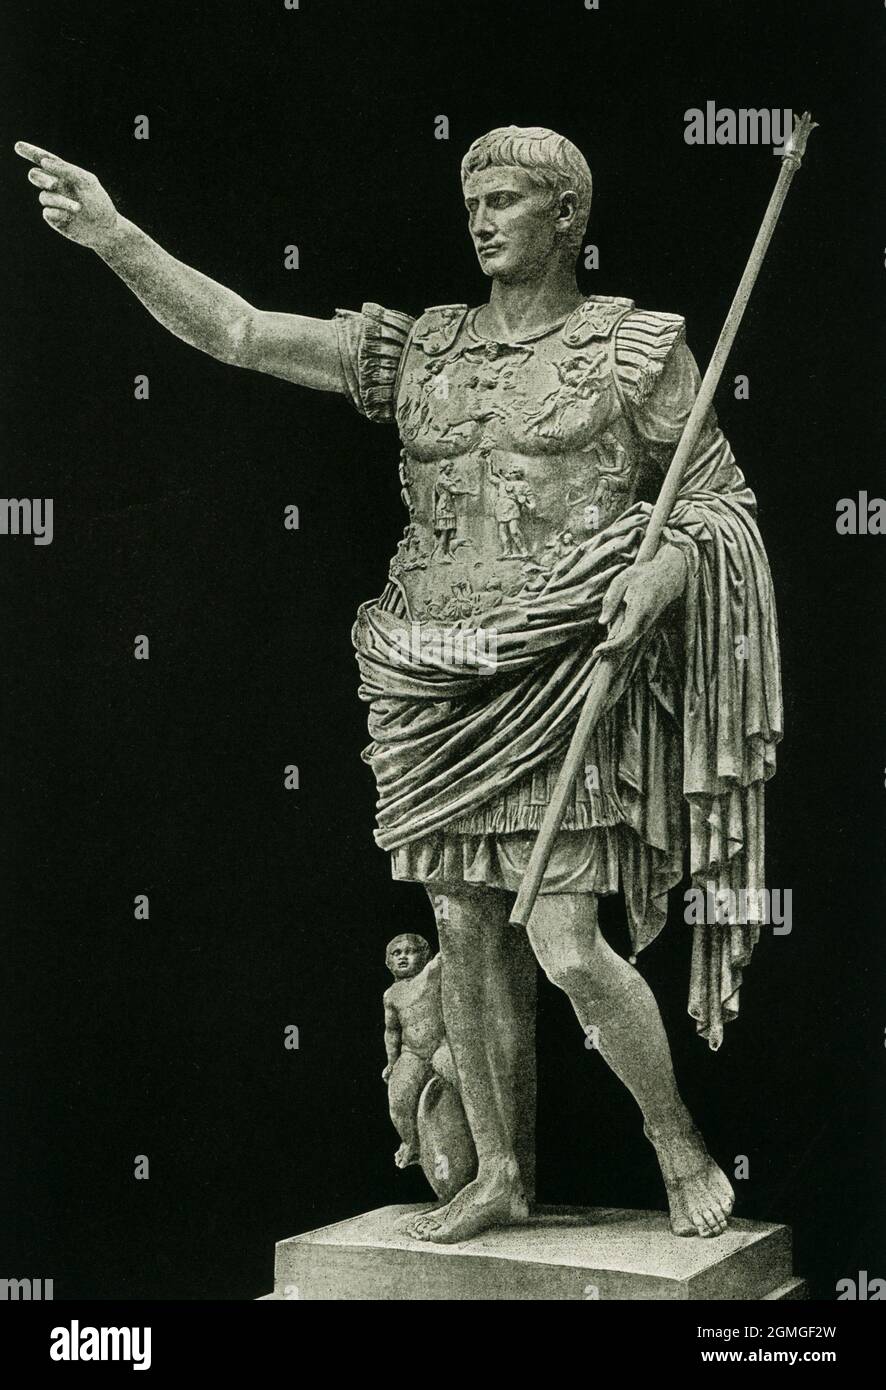 Augustus de Prima Porta est une statue de portrait pleine longueur de César Augustus, le premier empereur de l'Empire romain. Cette statue a été datée du début du 1er siècle après J.-C. Il a été trouvé dans les ruines de la Villa de Livia, la femme d'Auguste, à Prima Porta sur la via Flaminia. C'est une statue de l'empereur lui-même, portant un cuirass très décoré et avec son manteau (paludamentum). Cette photo date de 1910. Banque D'Images